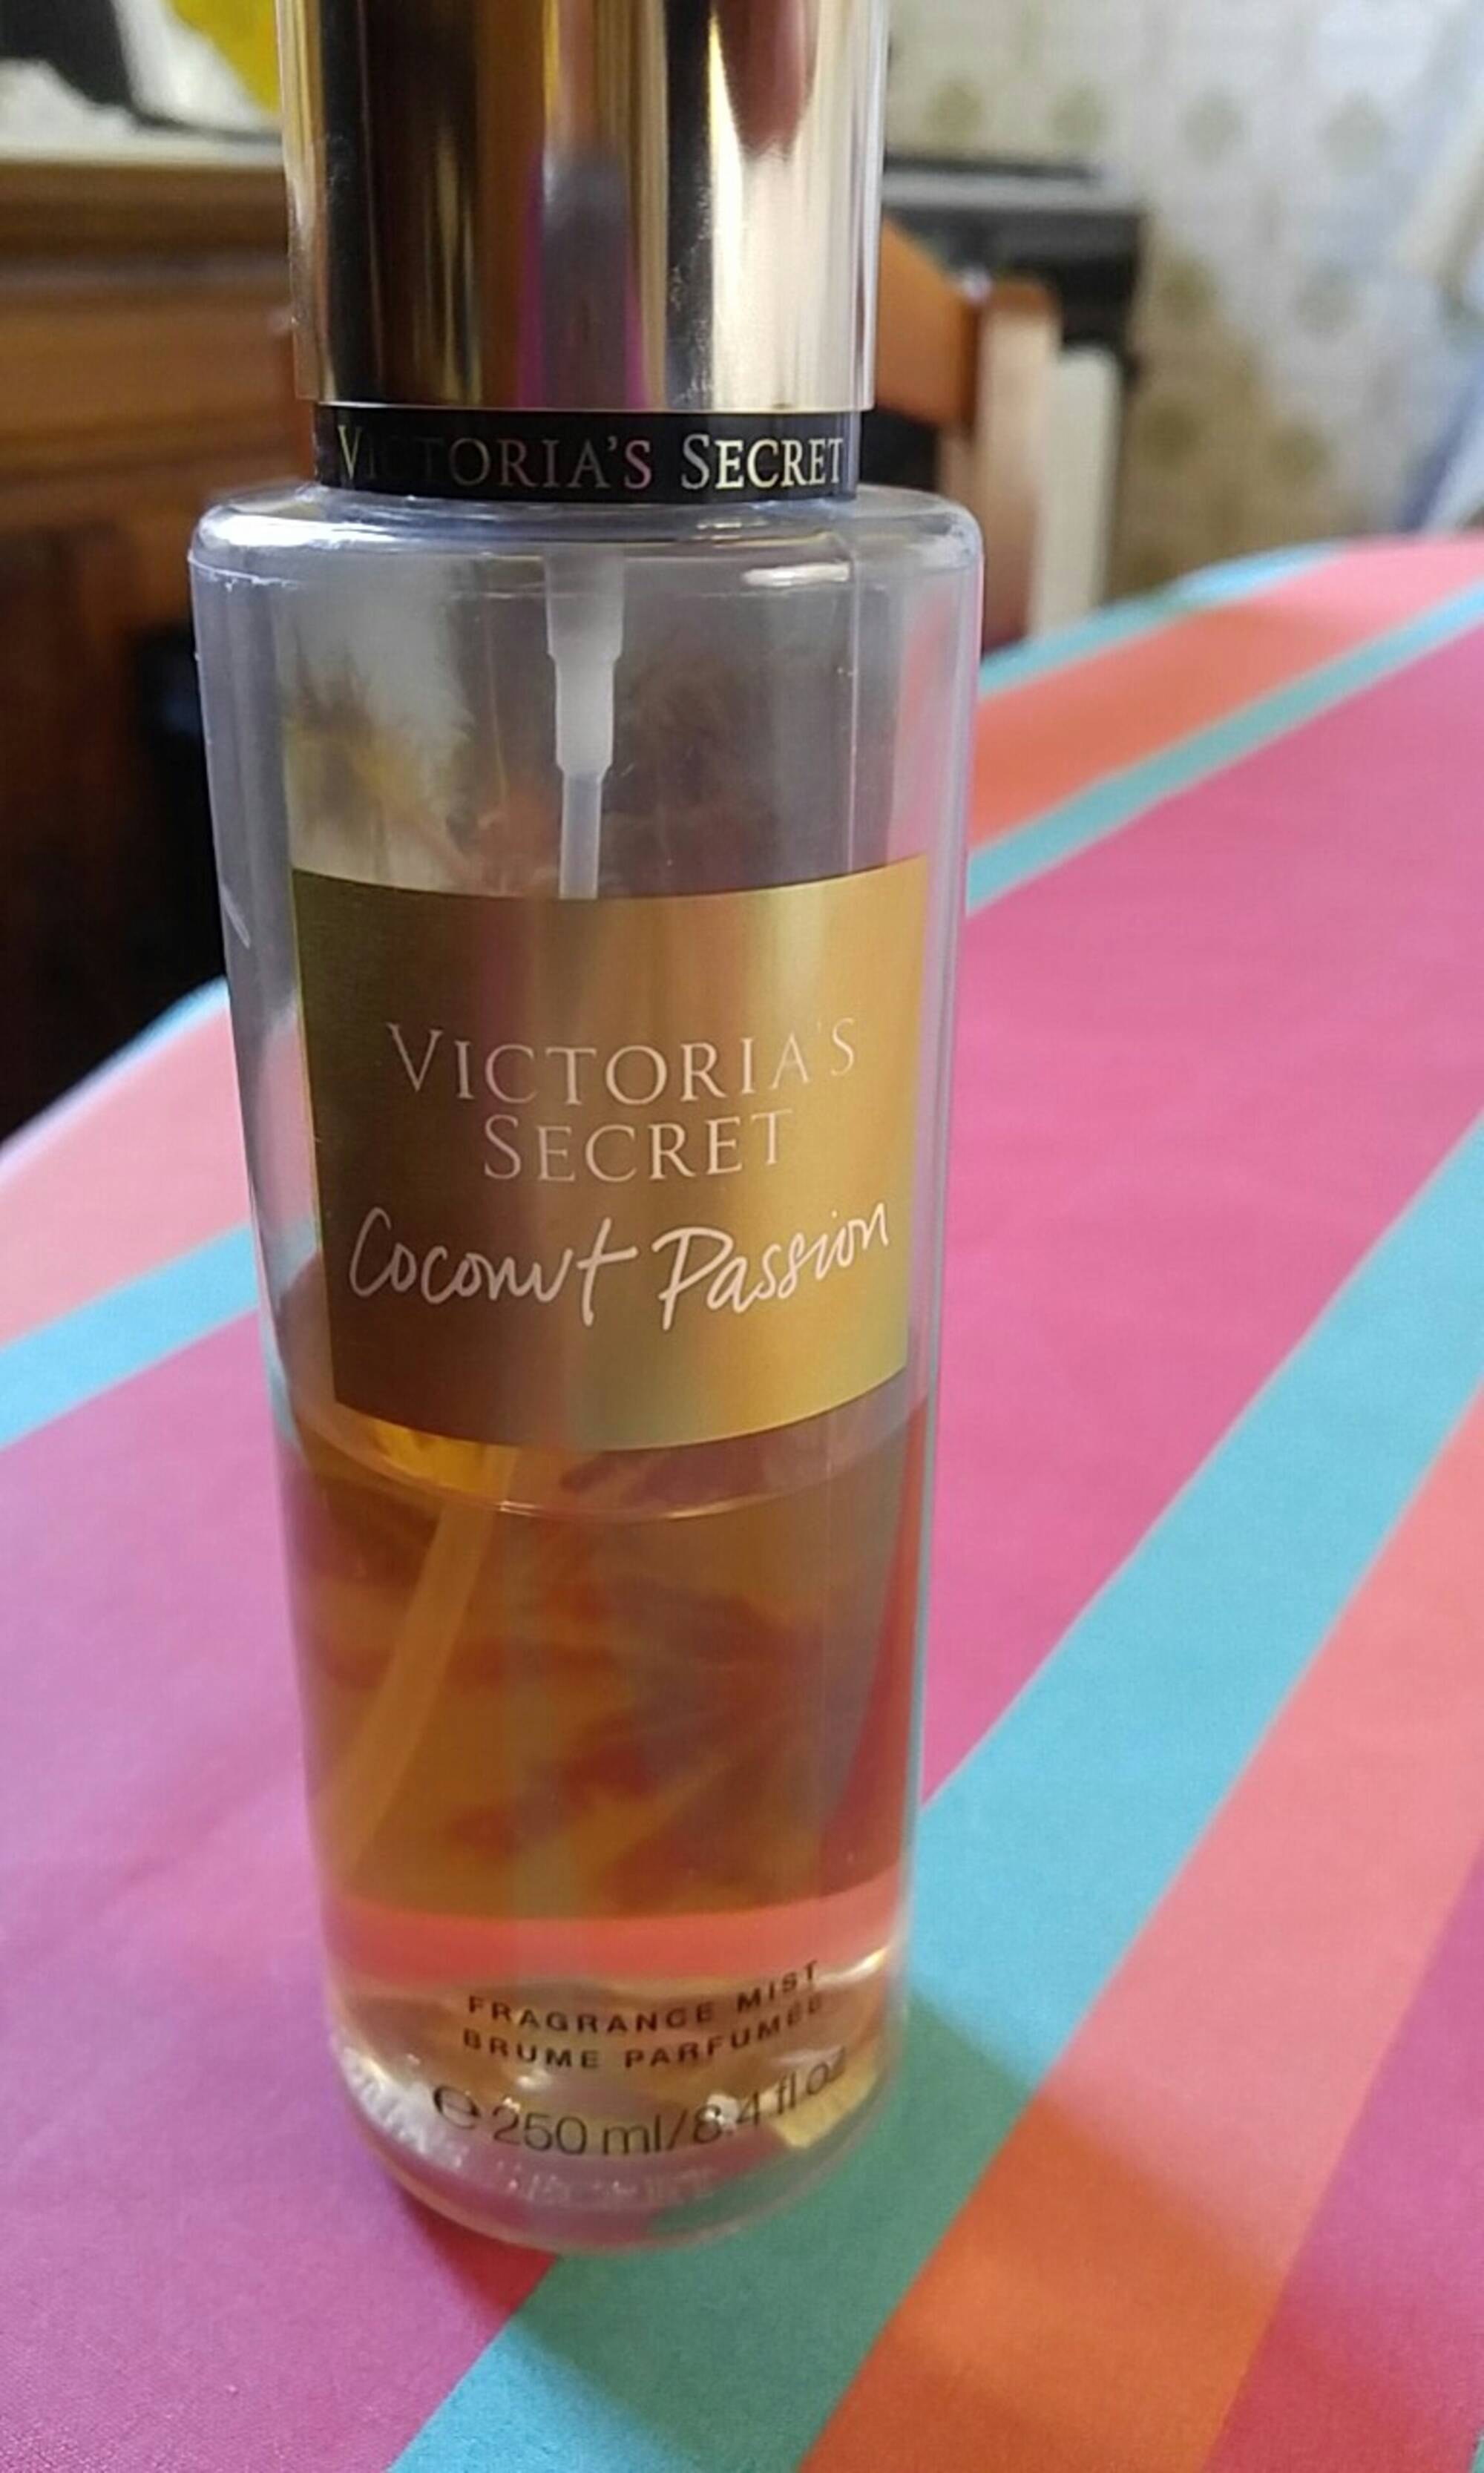 VICTORIA'S SECRET - Coconut passion - Brume parfumée